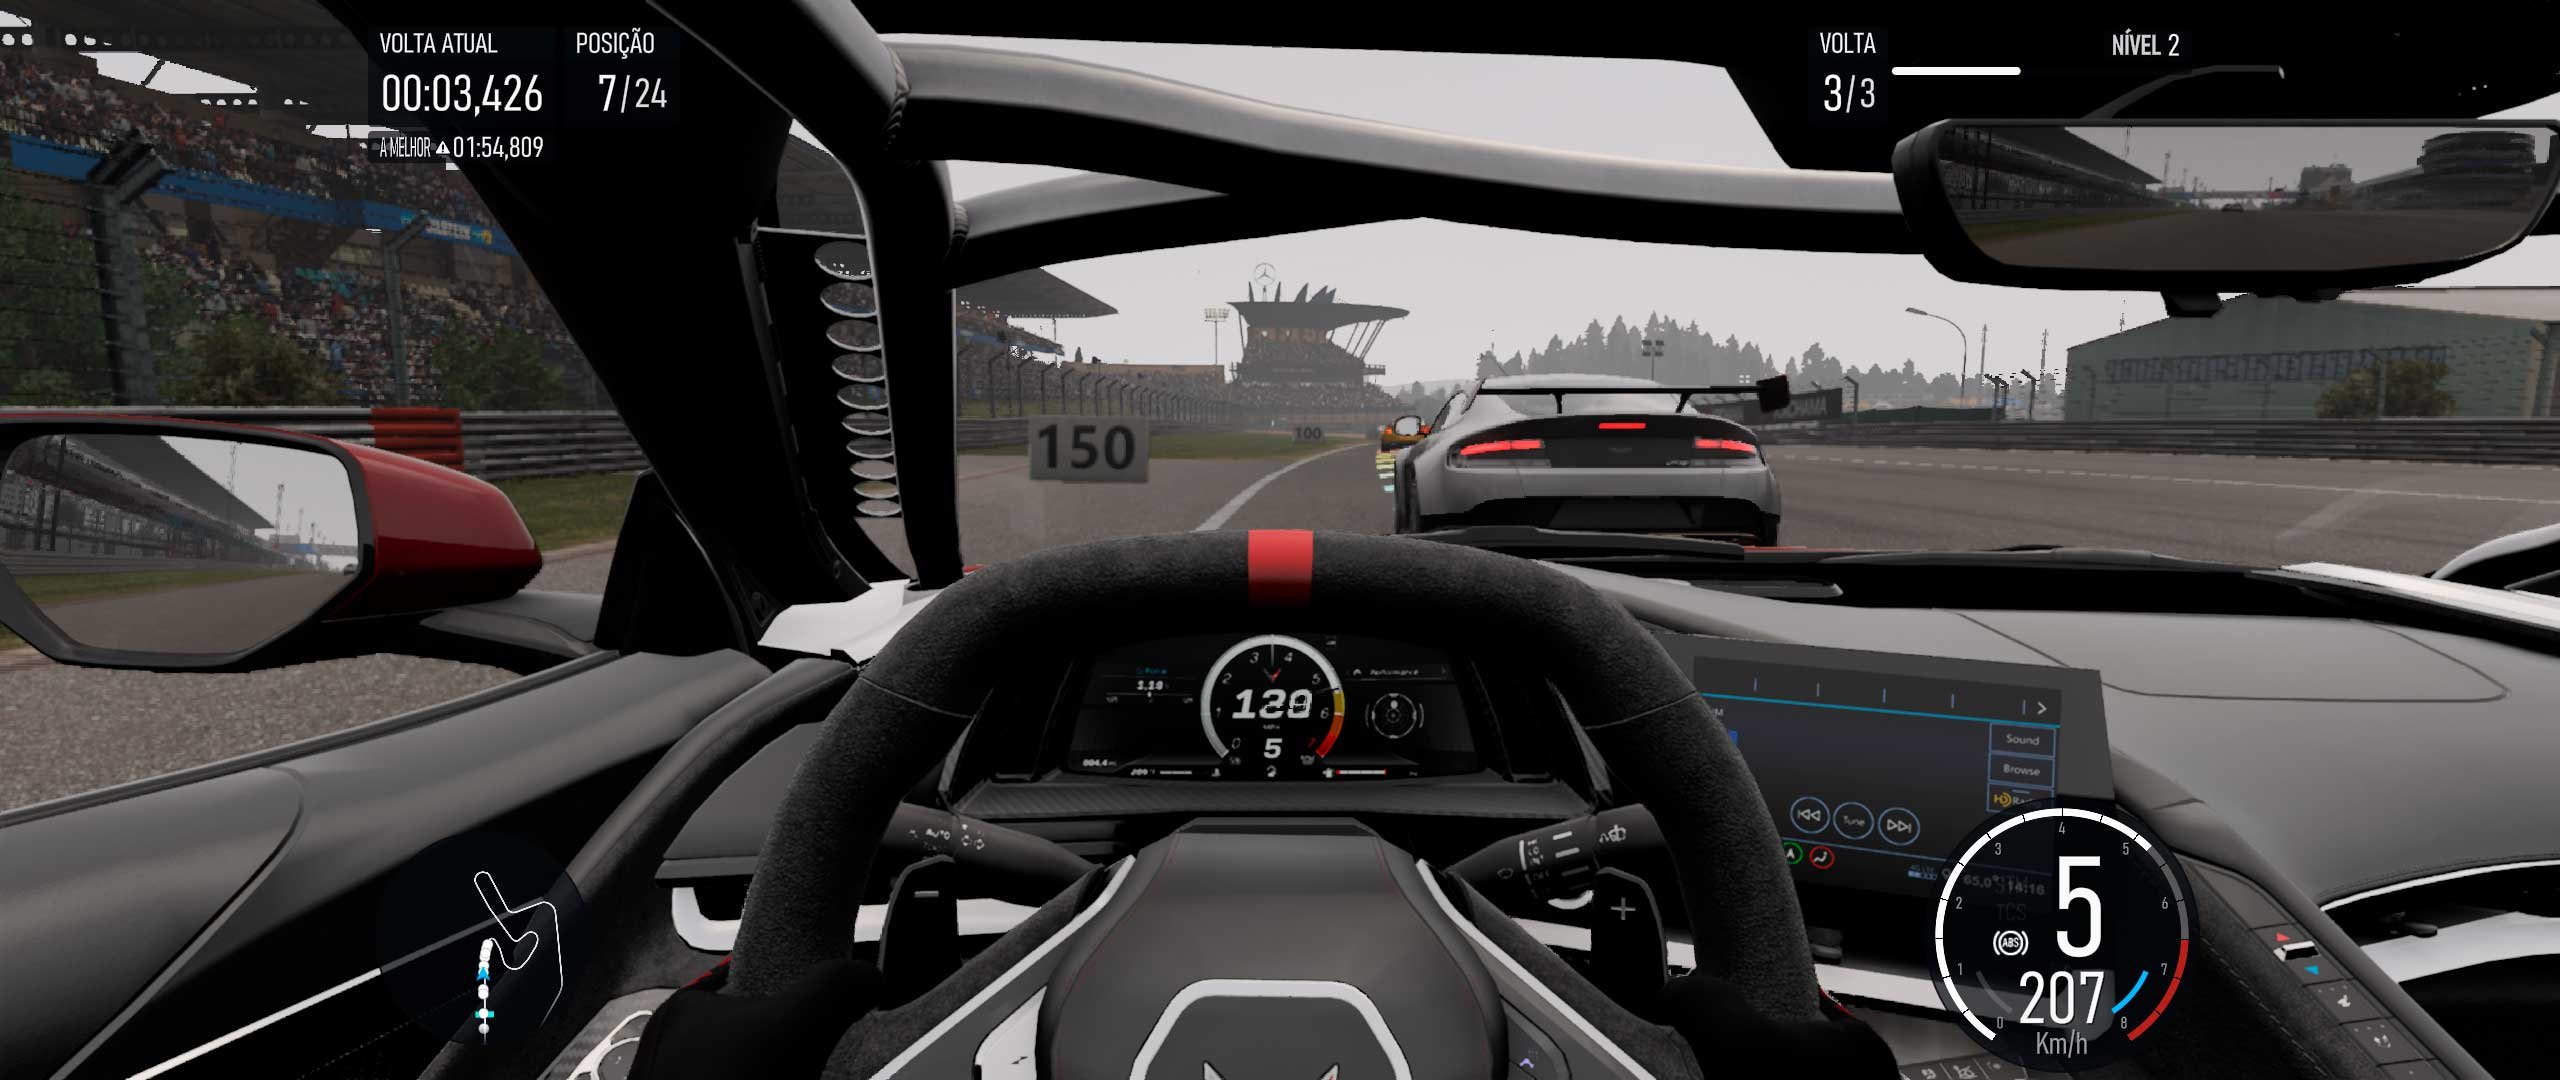 Descrição da Imagem: Cena de gameplay corrida com camra dentro do carro mostrando o painel